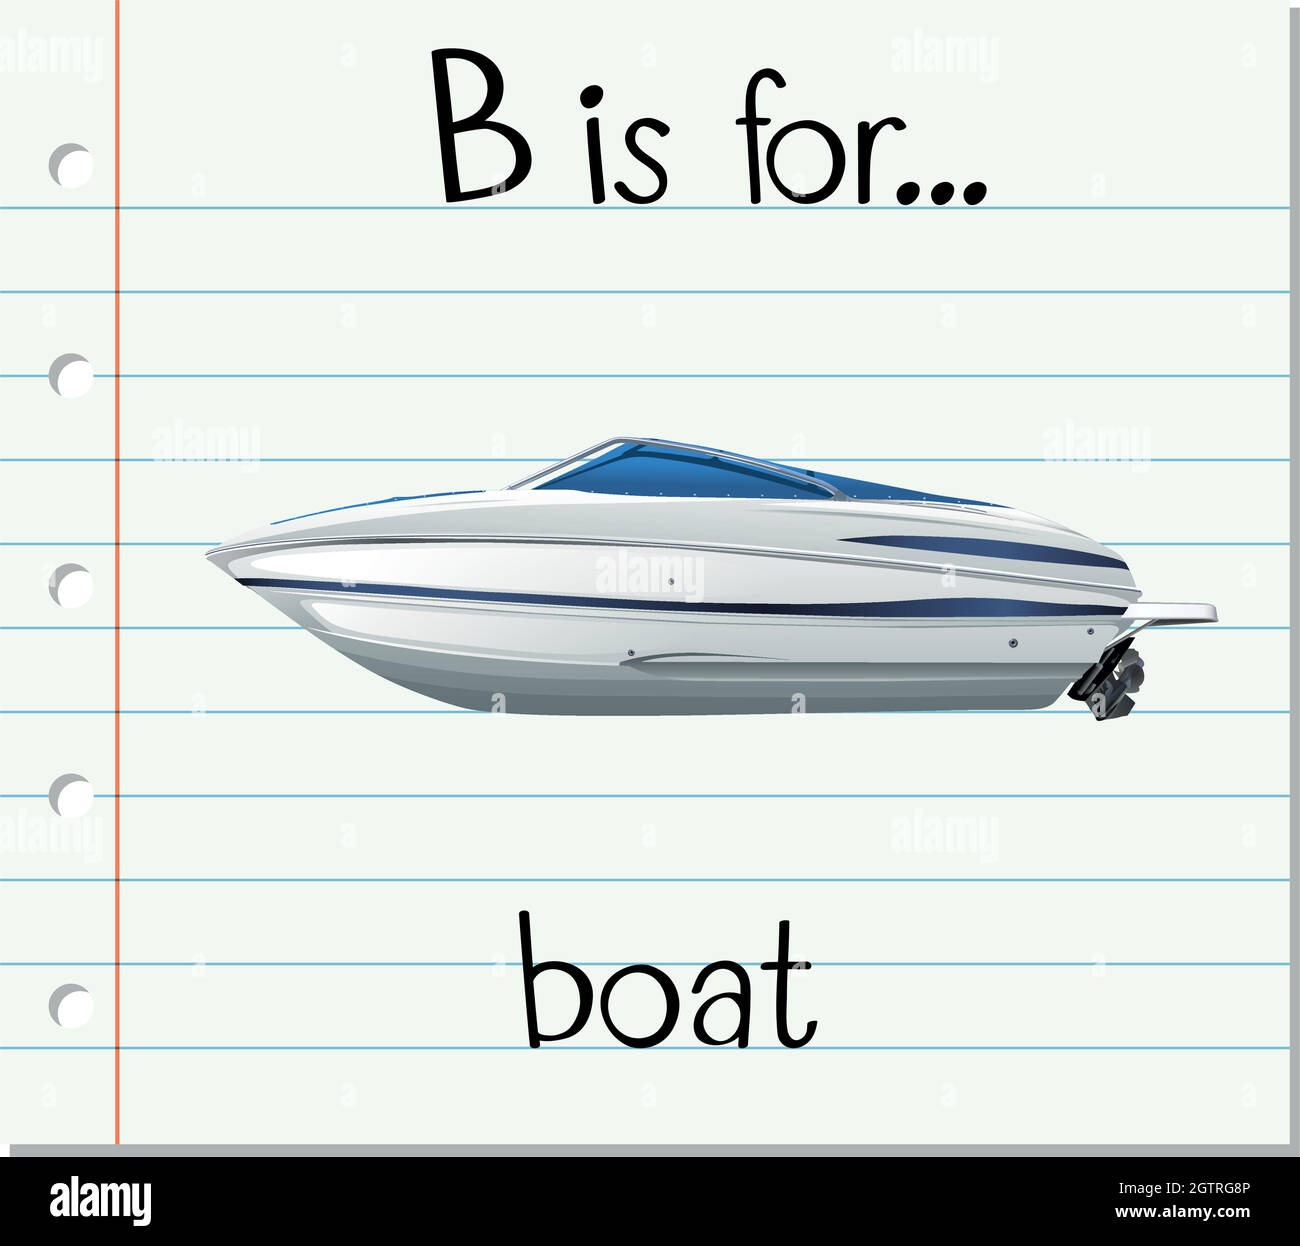 Есть слова лодка. Карточки по английскому лодка. Карточка лодка. Лодка на английском. Катер на английском языке.